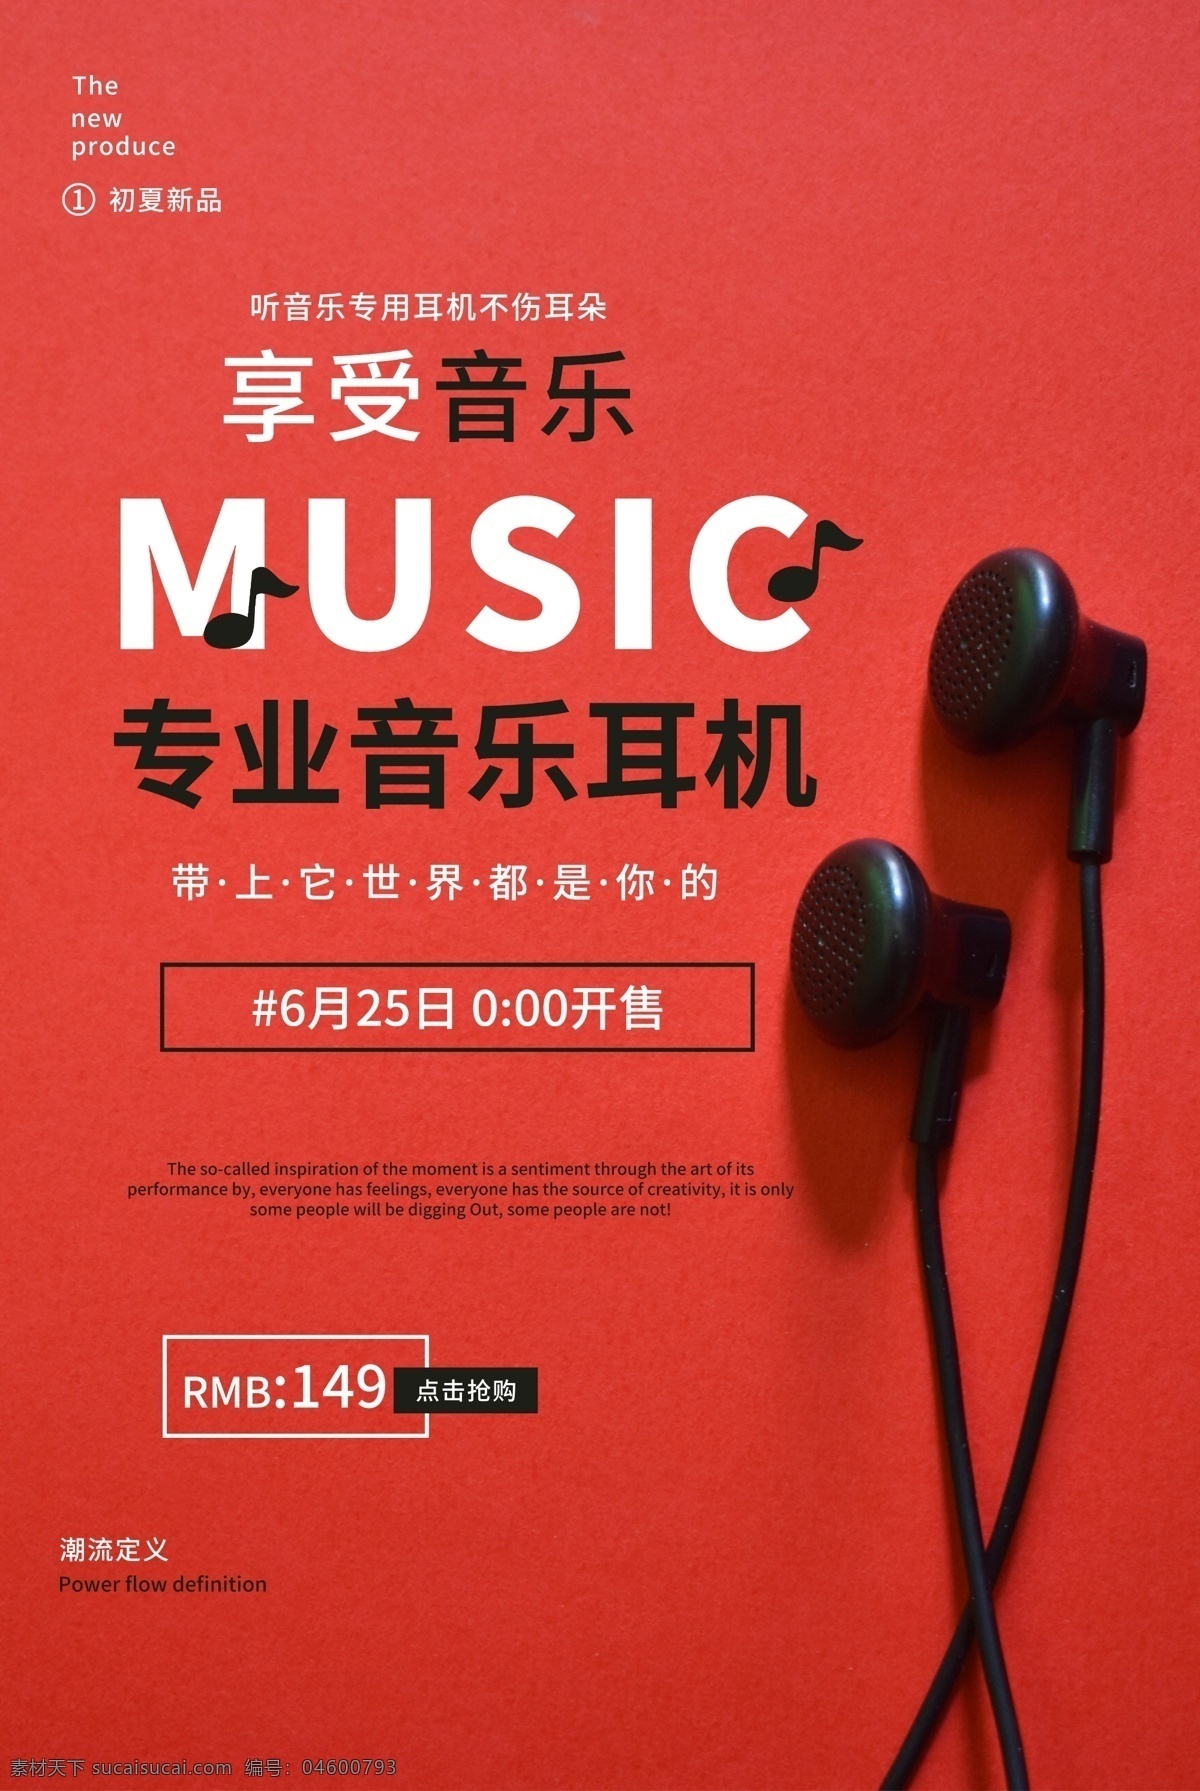 耳机 专业 音乐 活动 宣传海报 专业音乐 宣传 海报